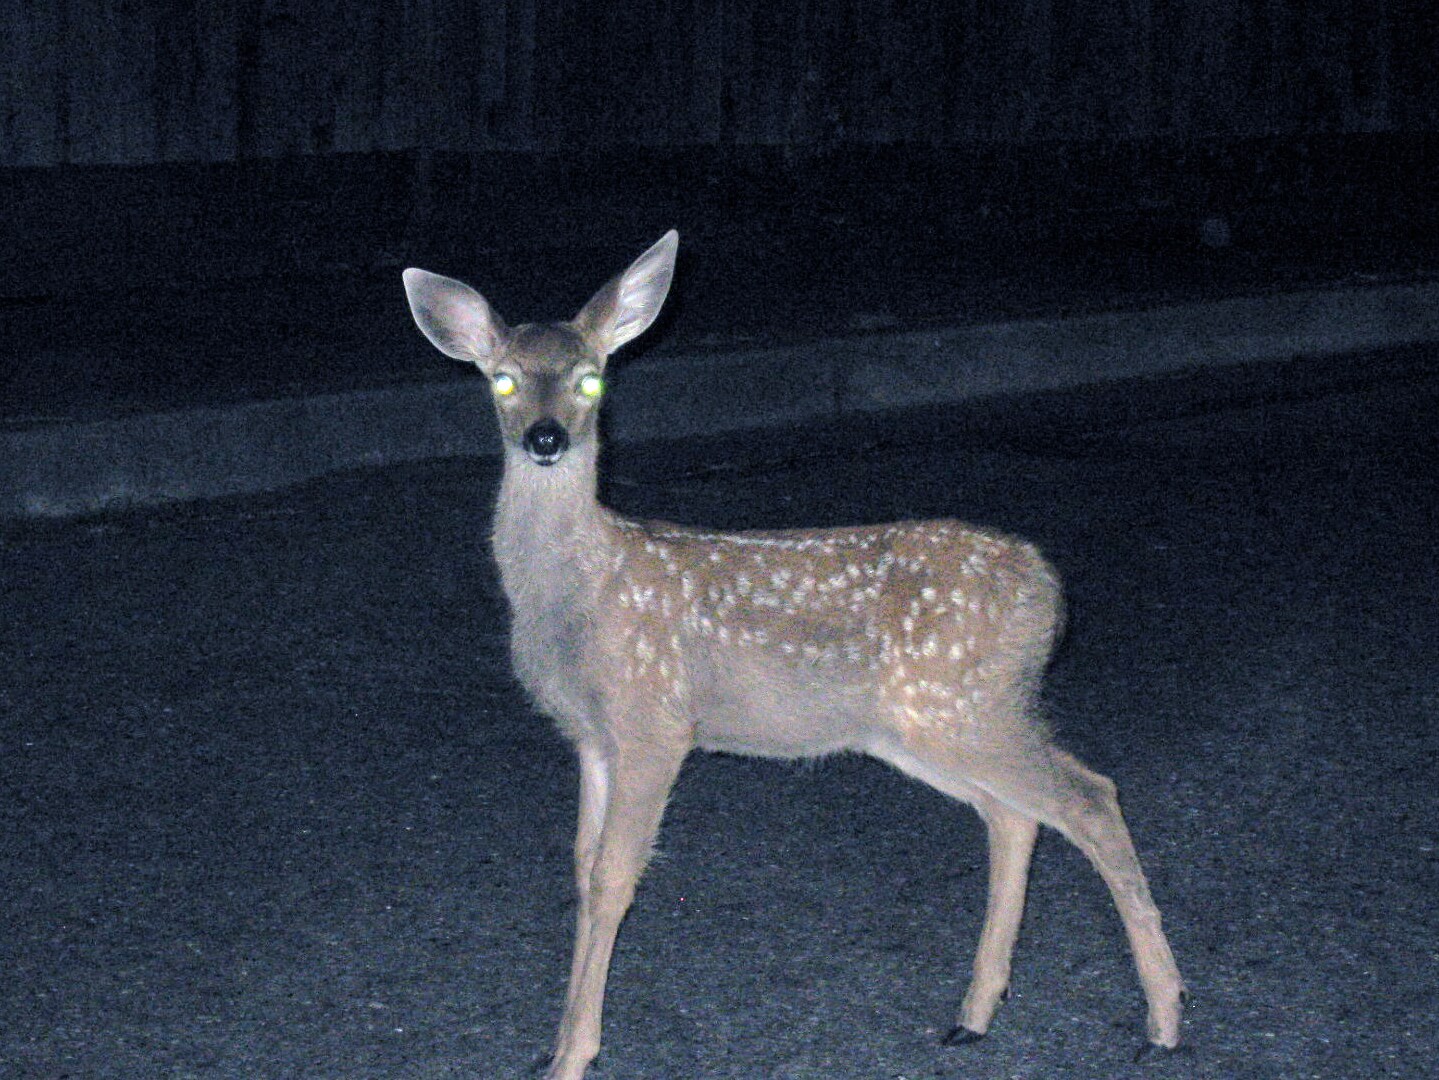 Deer_staring_into_headlights(1)